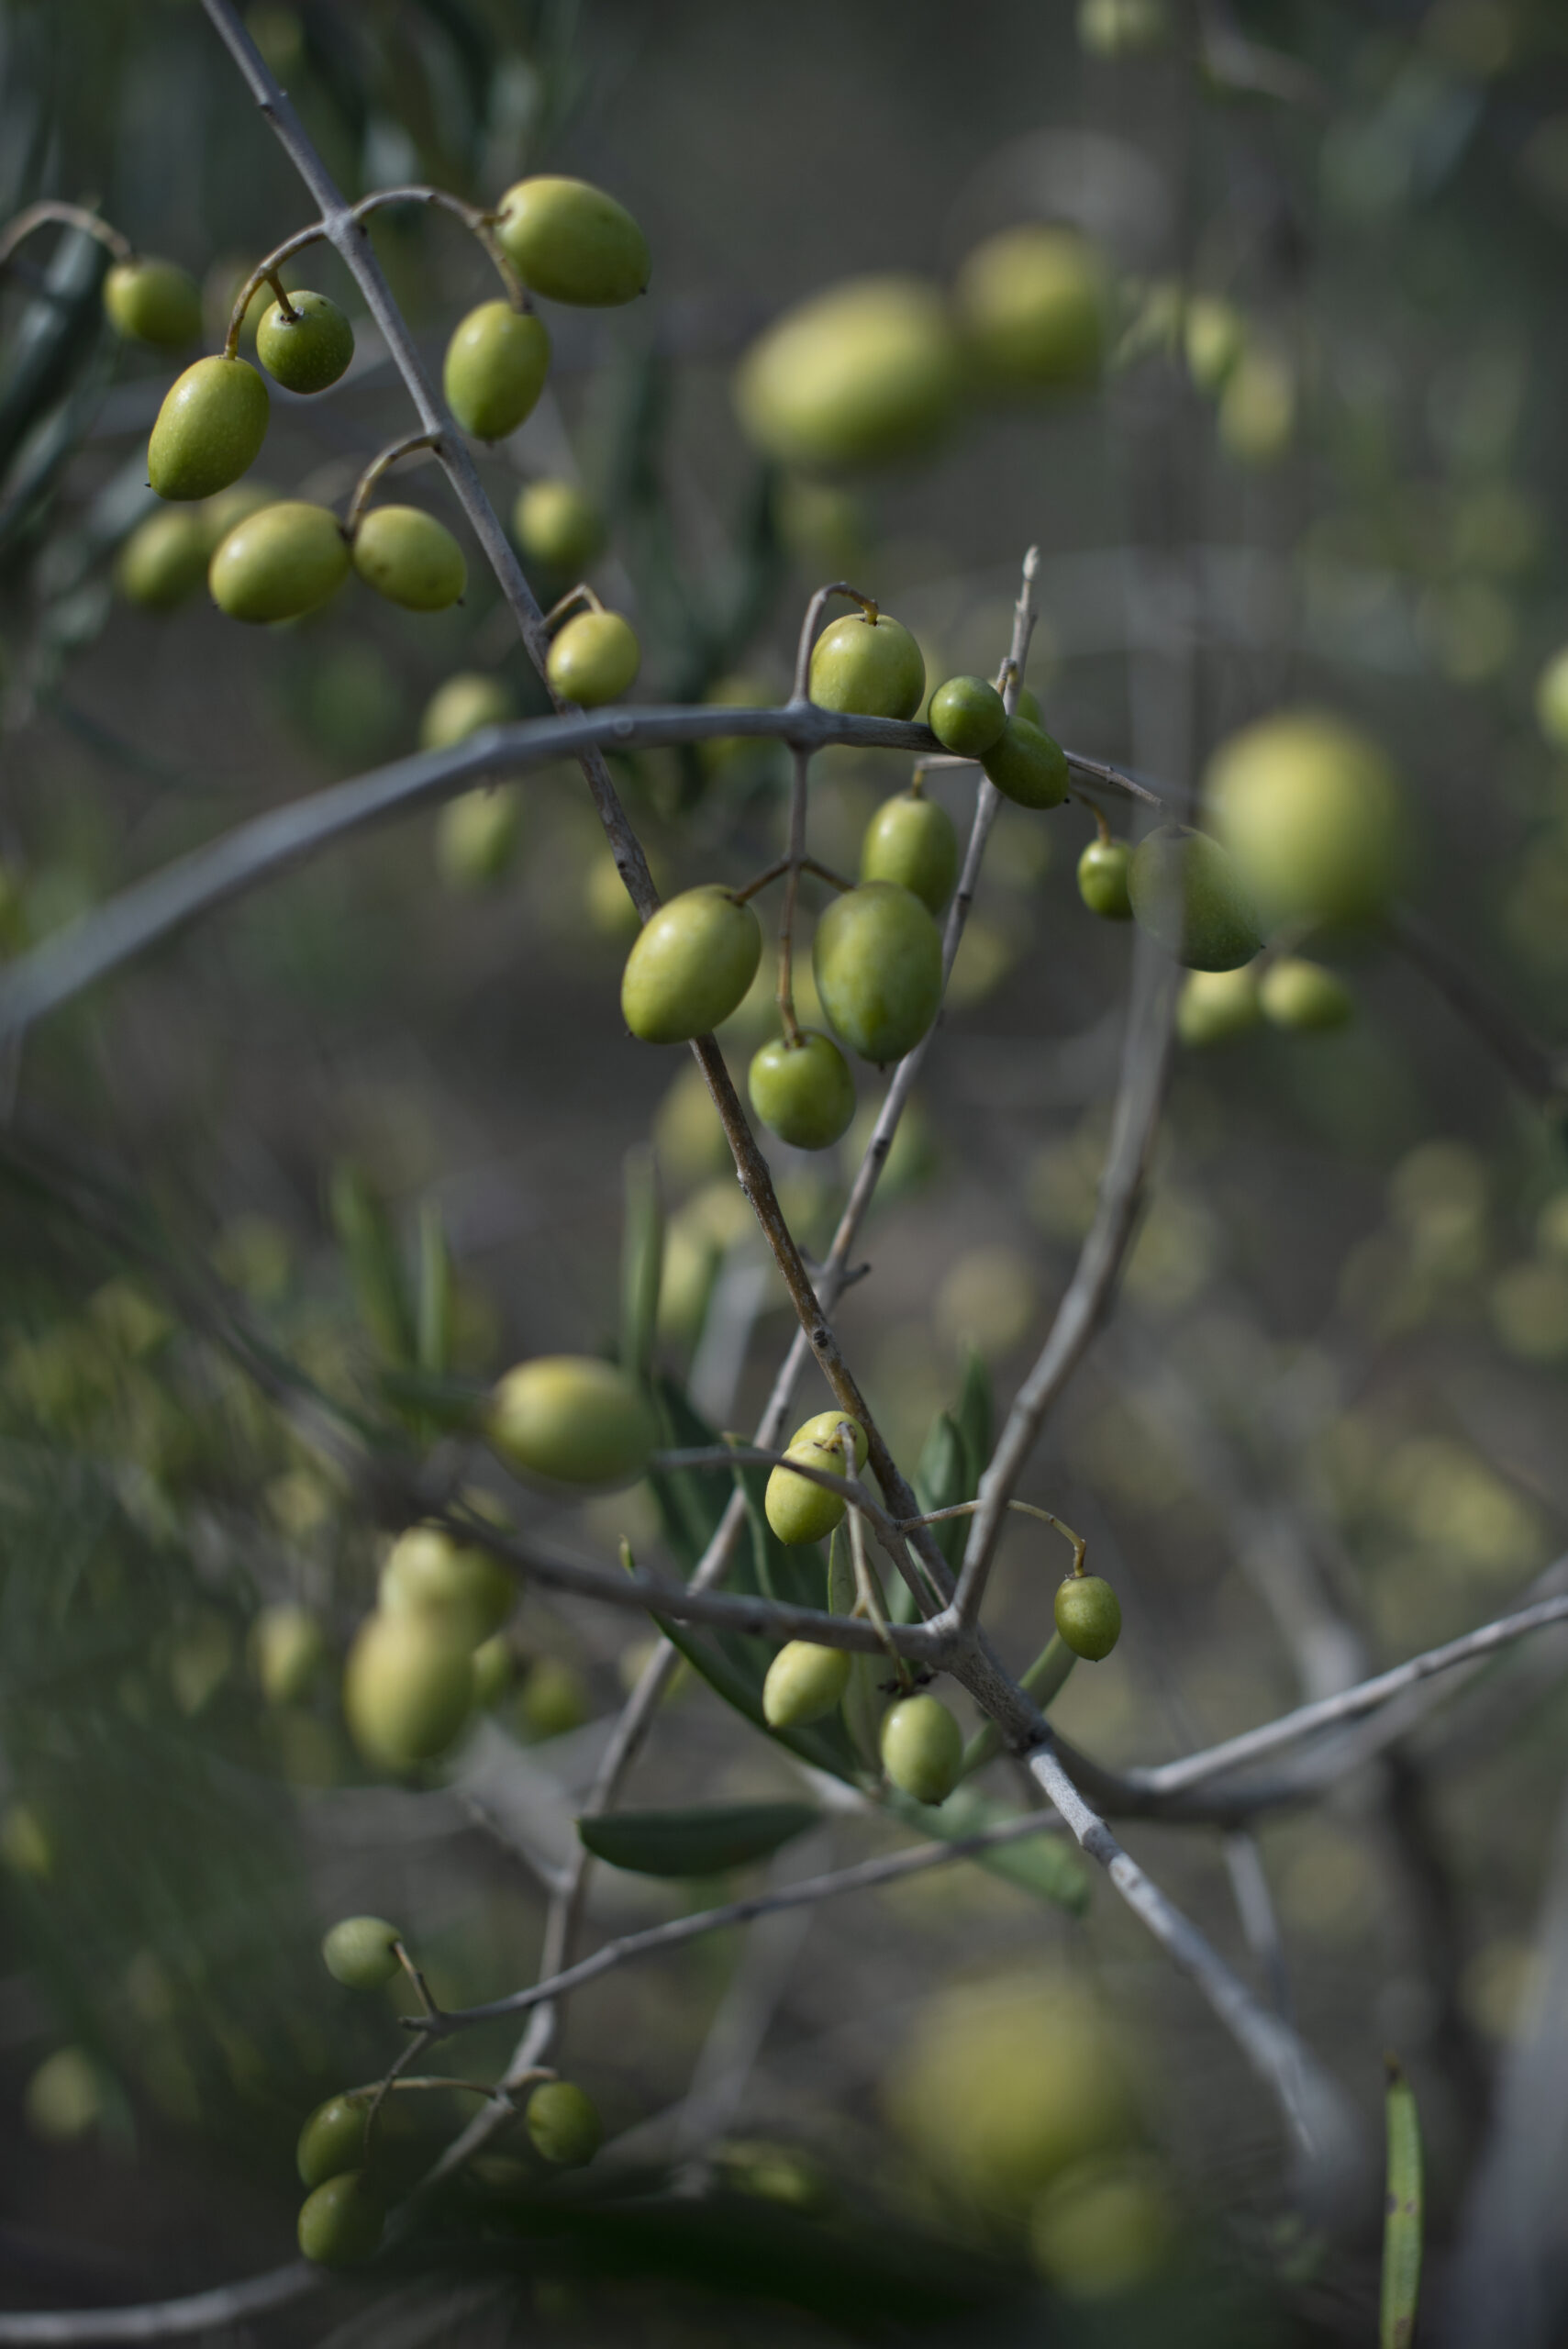 Olives ready for the picking during olive harvest at Baker Lane Vineyards in Sebastopol, California, November 8, 2018. (Photo: Erik Castro/for Sonoma Magazine)